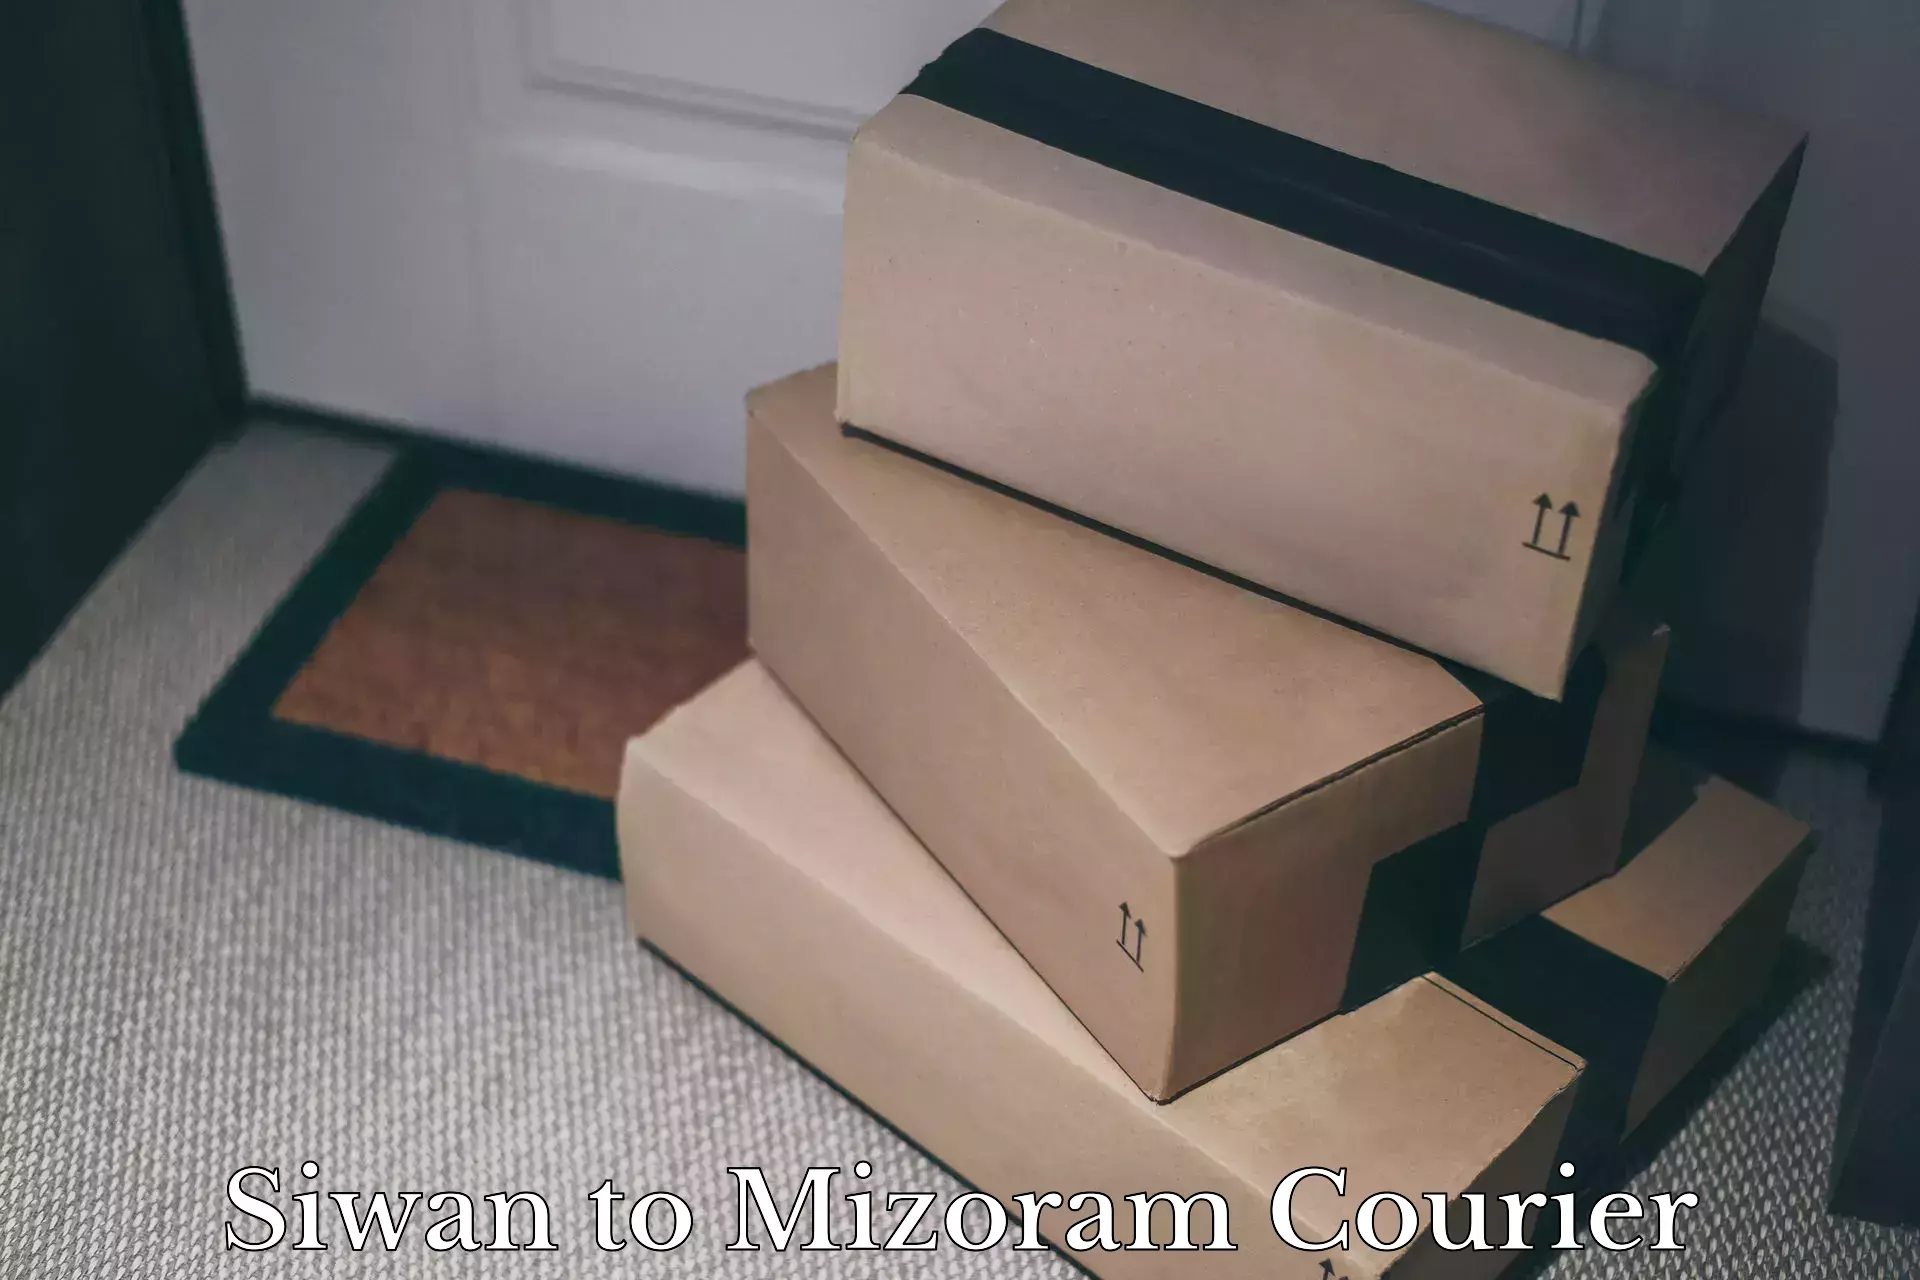 Furniture moving service Siwan to Mizoram